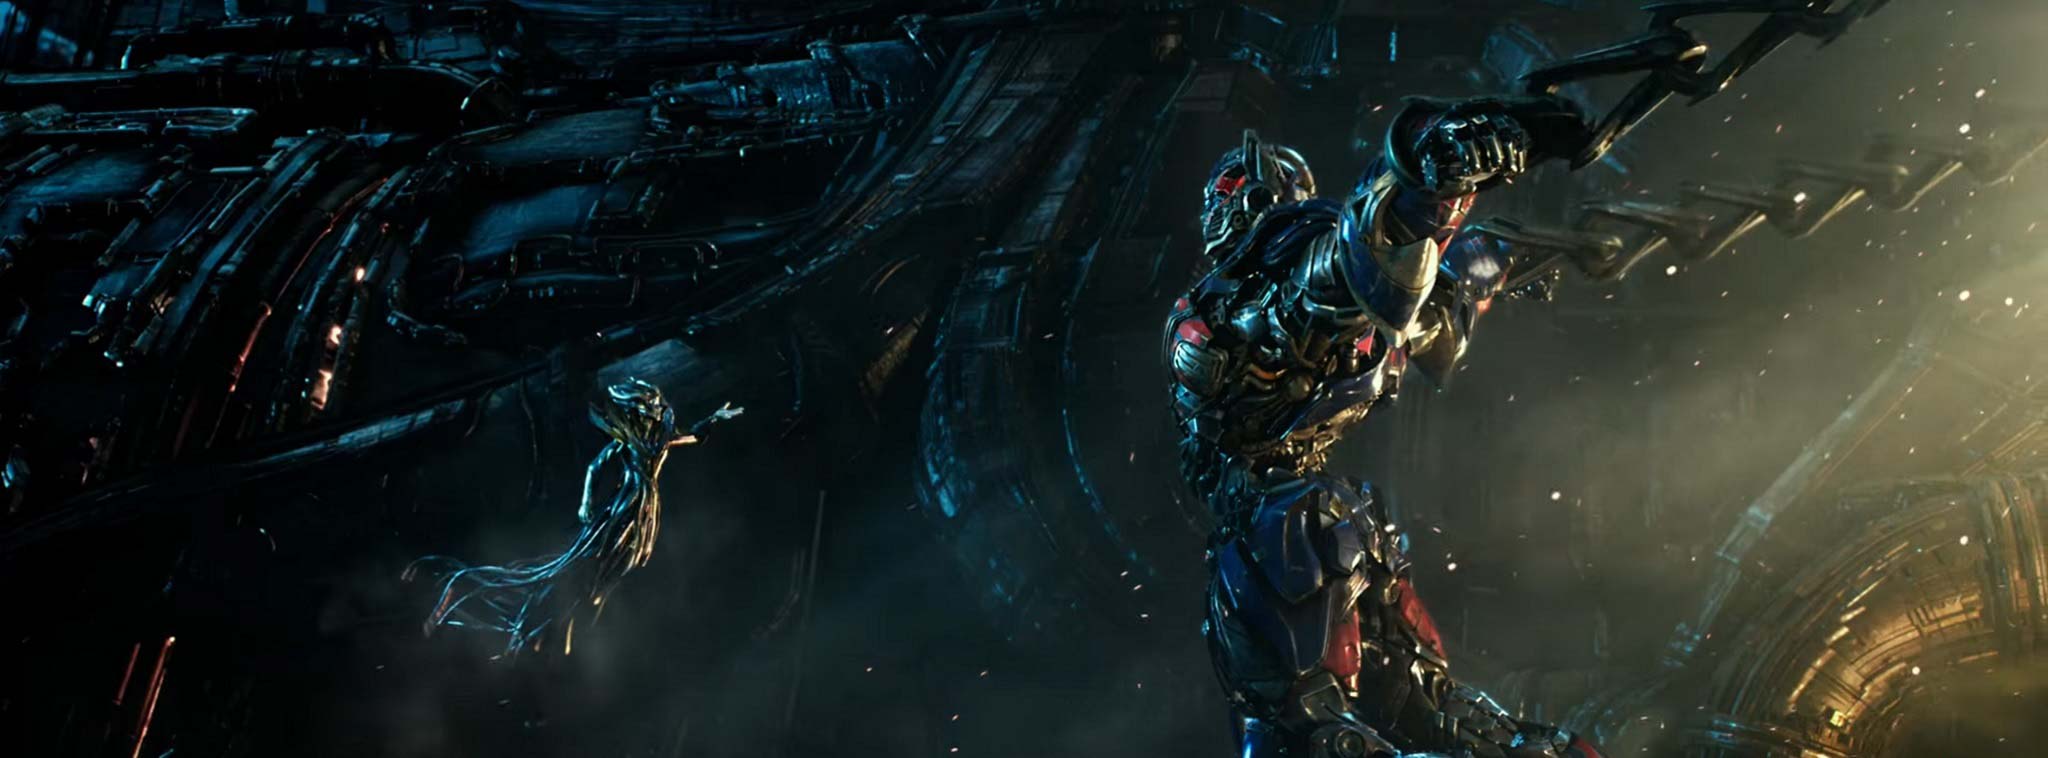 Trailer mới Transformers: The Last Knight - Optimus Prime đã gặp được chủ nhân của mình